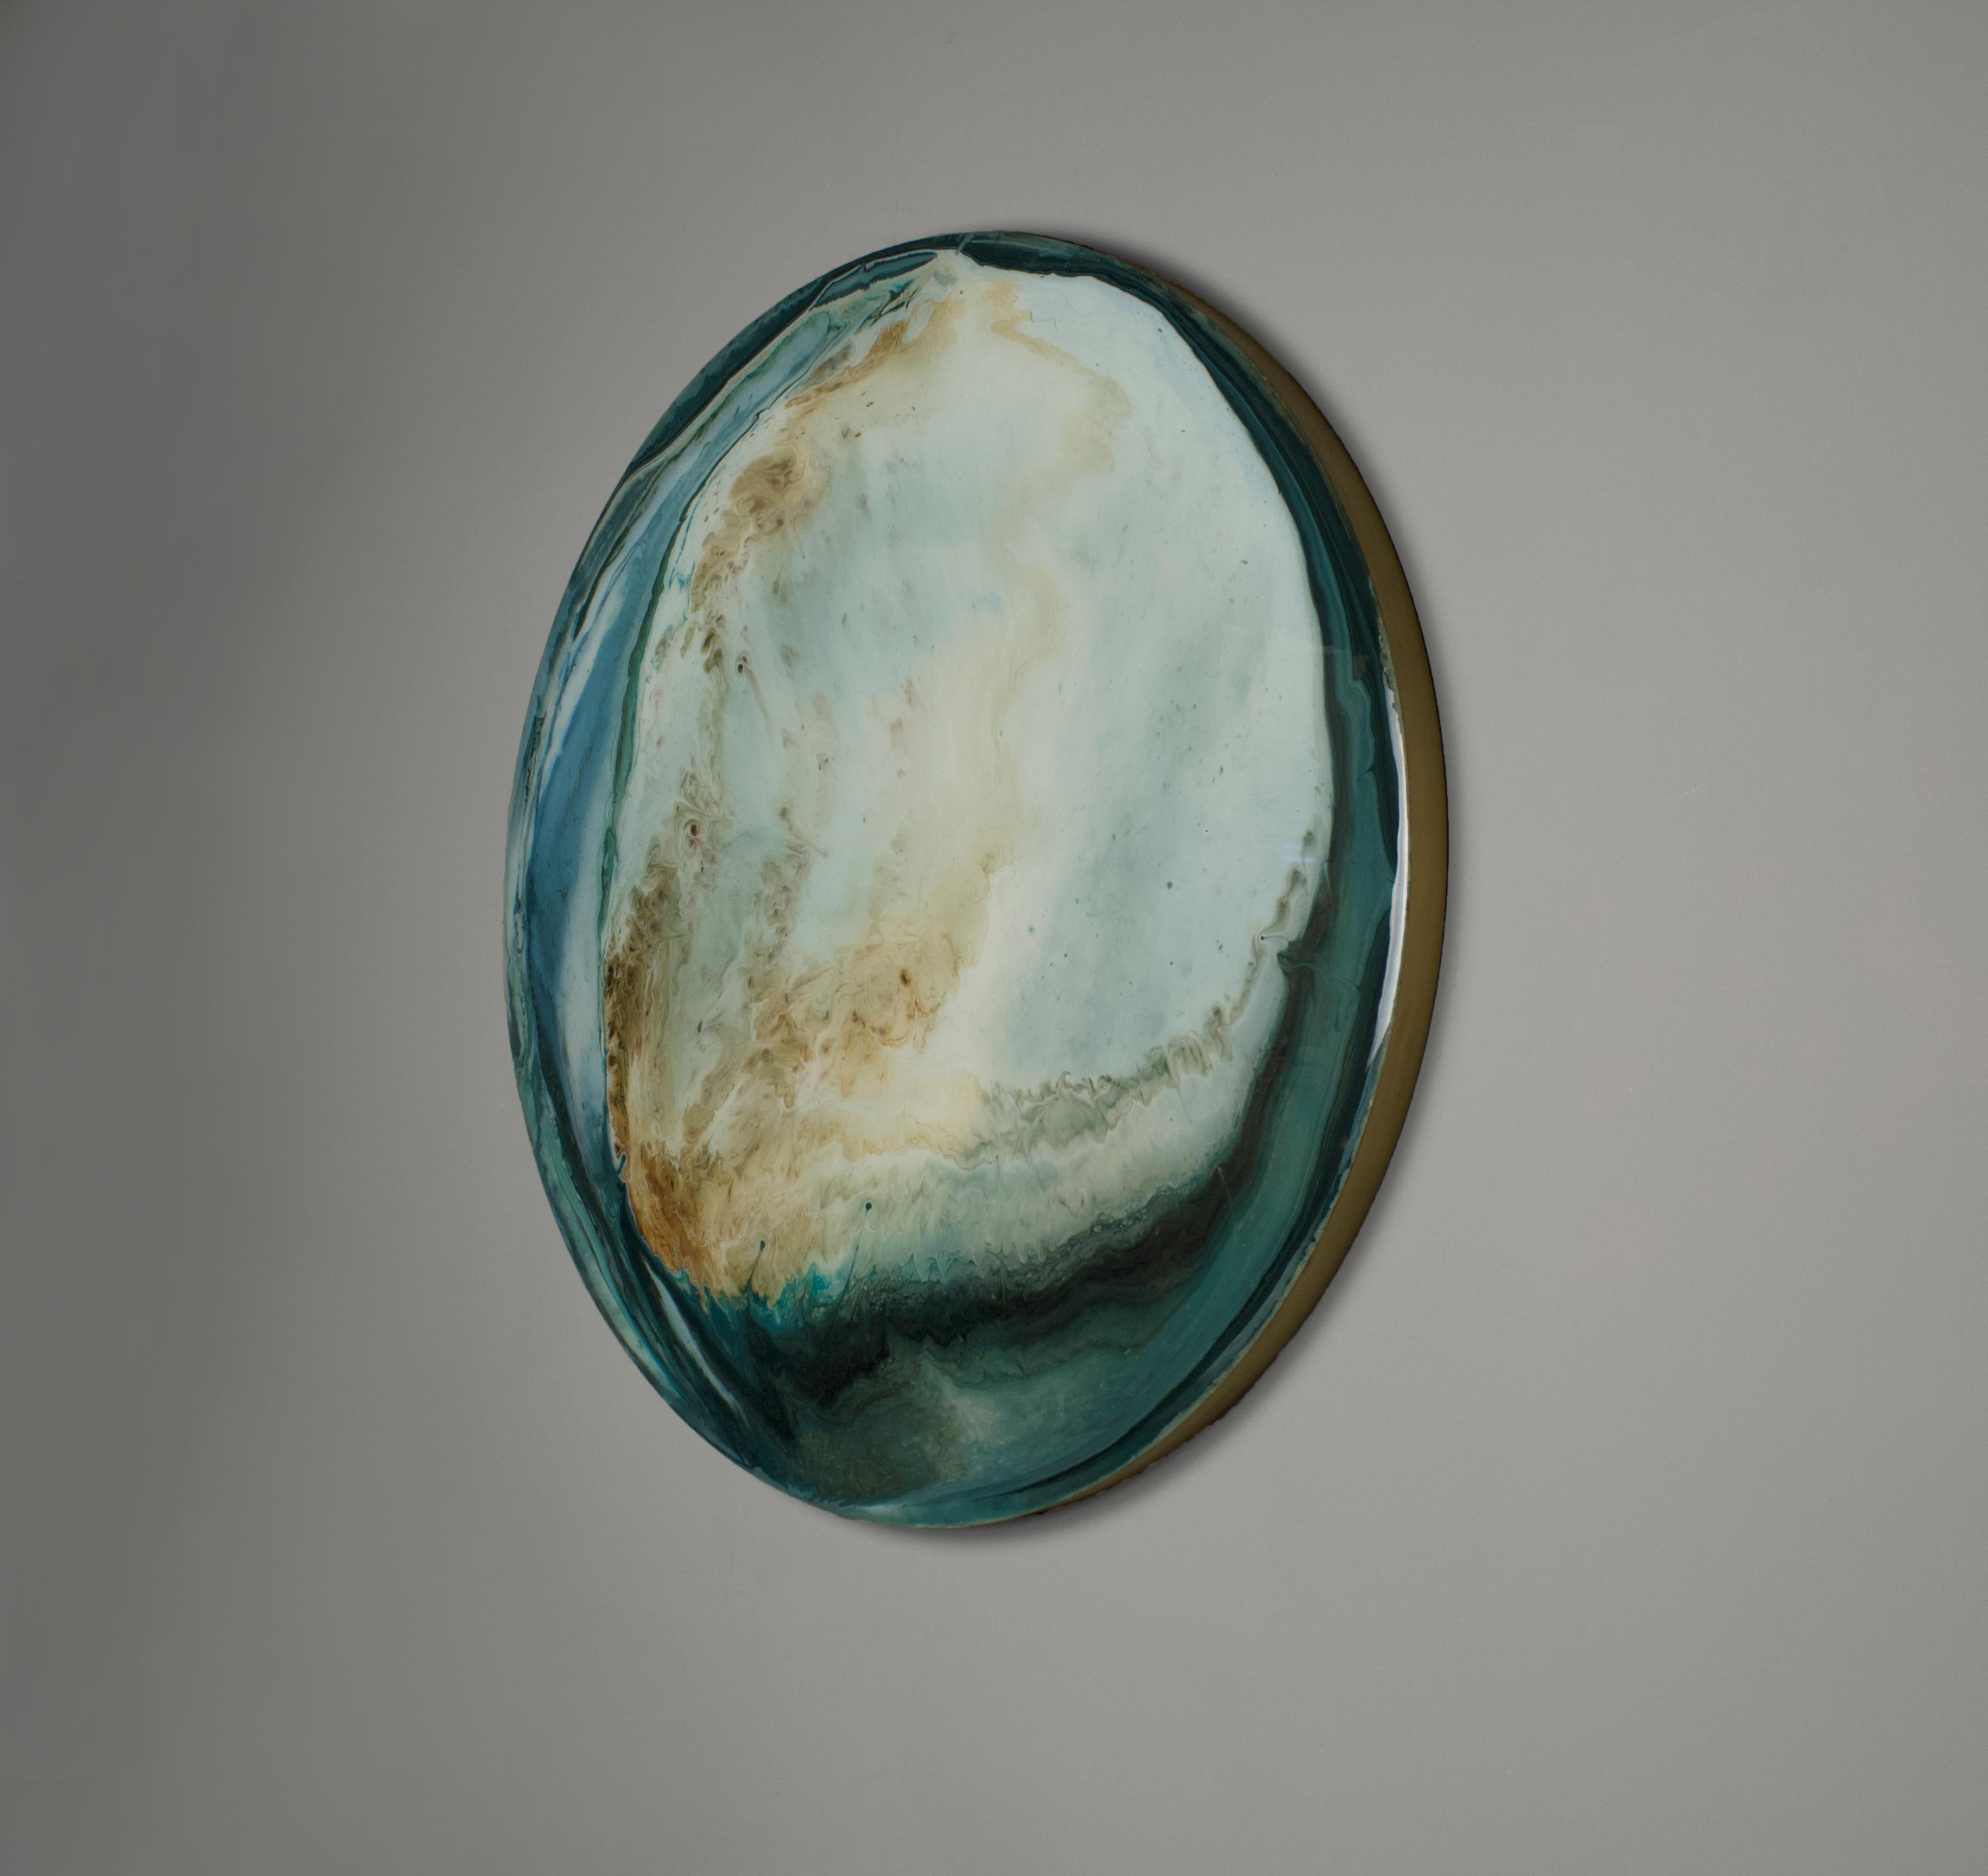 Oxy oyster ronde minimaliste par Corine Vanvoorbergen
Pièce unique
Dimensions : diamètre 110 cm
Matériaux : Laiton, bois, pigments naturels, métal et époxy.

Le pouvoir du changement est l'inspiration de Corine pour cette pièce. Elle utilise une